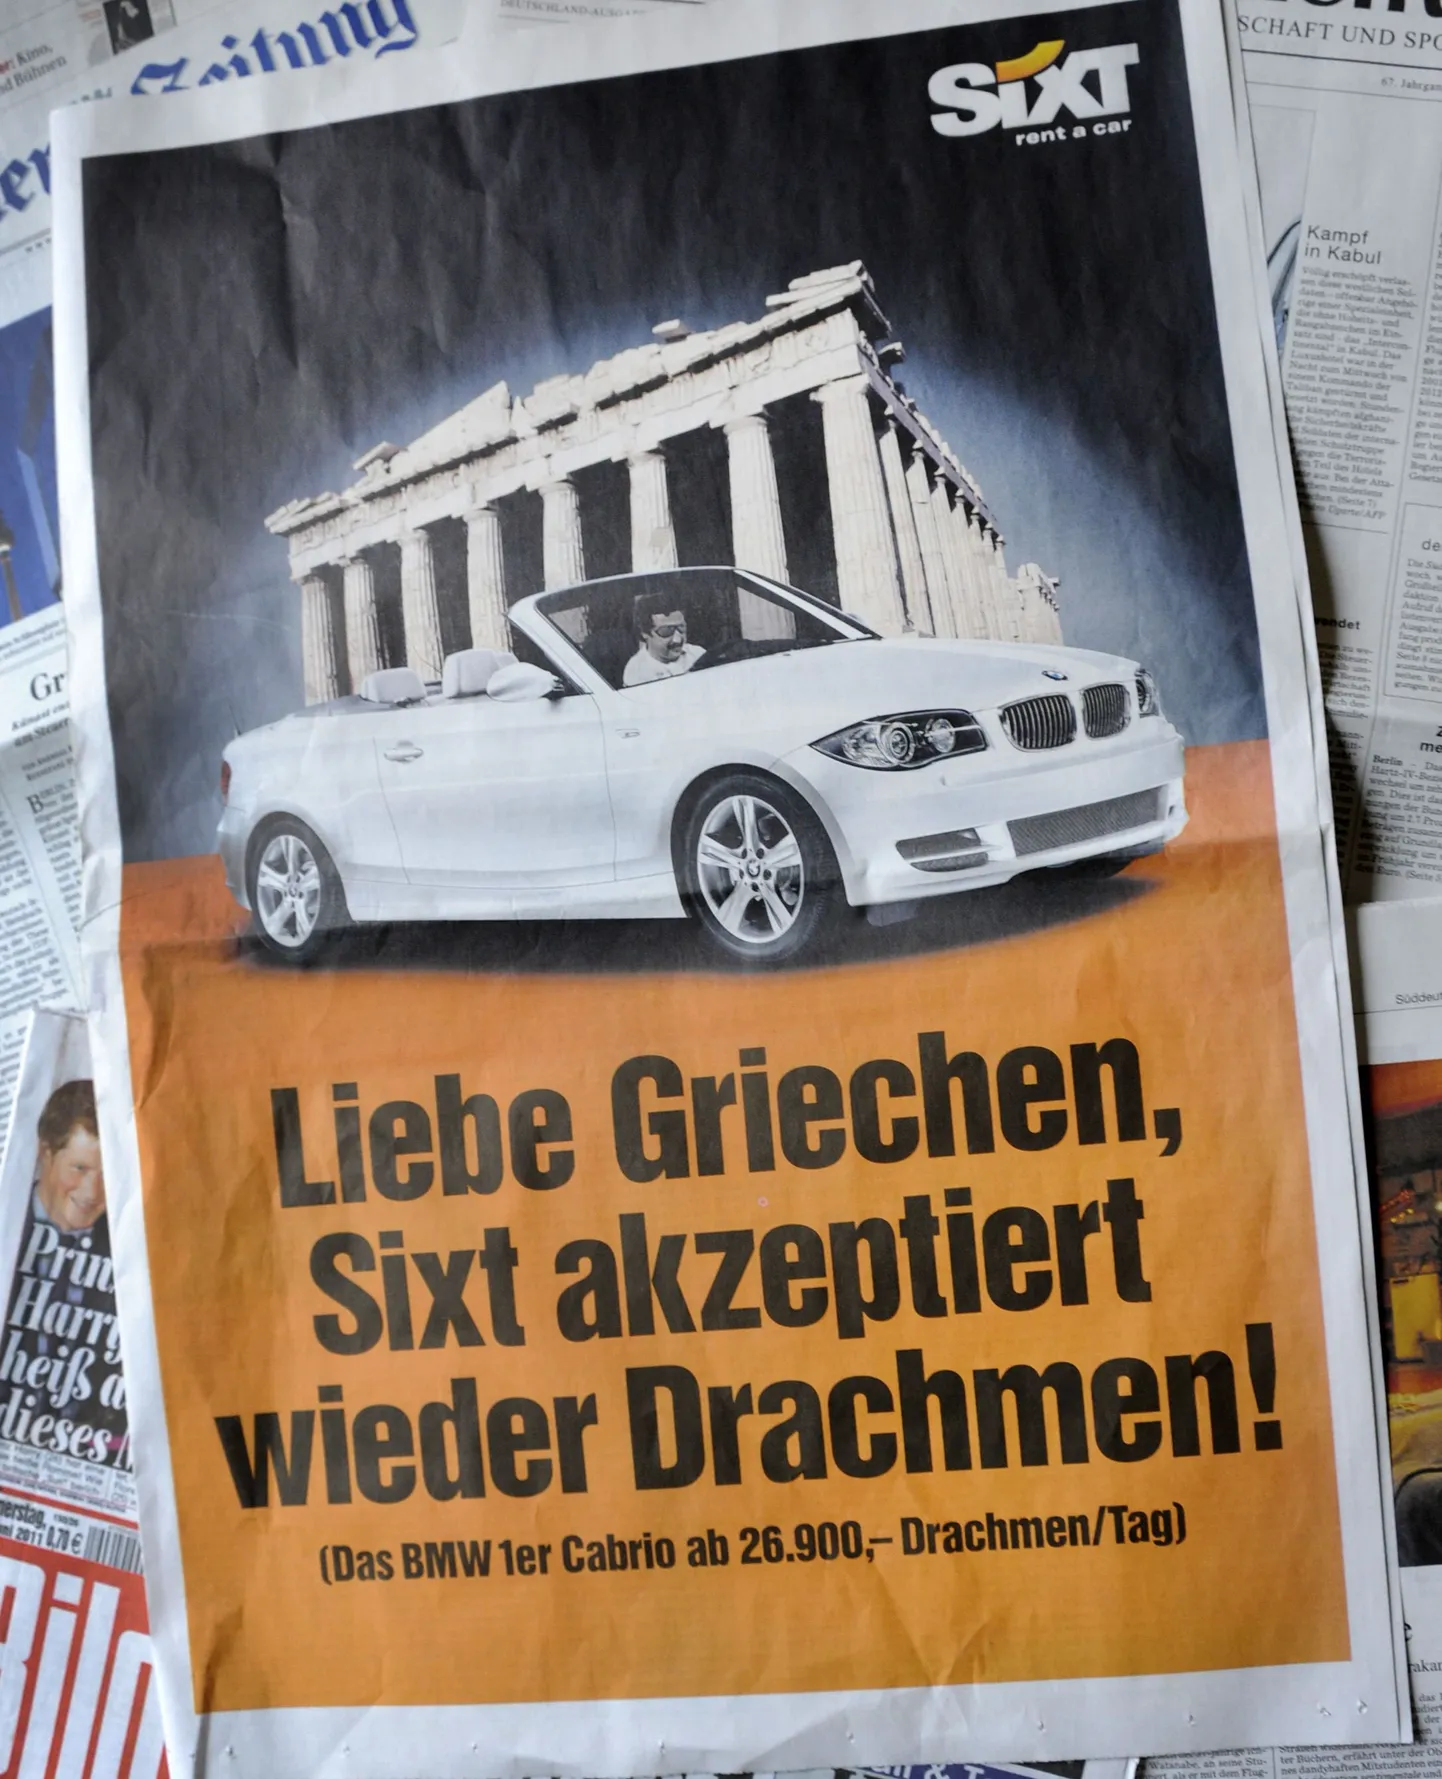 Немецкое отделение фирмы по аренде автомобилей Sixt в своей рекламе пошутило над убитой кризисом Грецией: "Дорогая Греция! Sixt снова принимает драхмы".